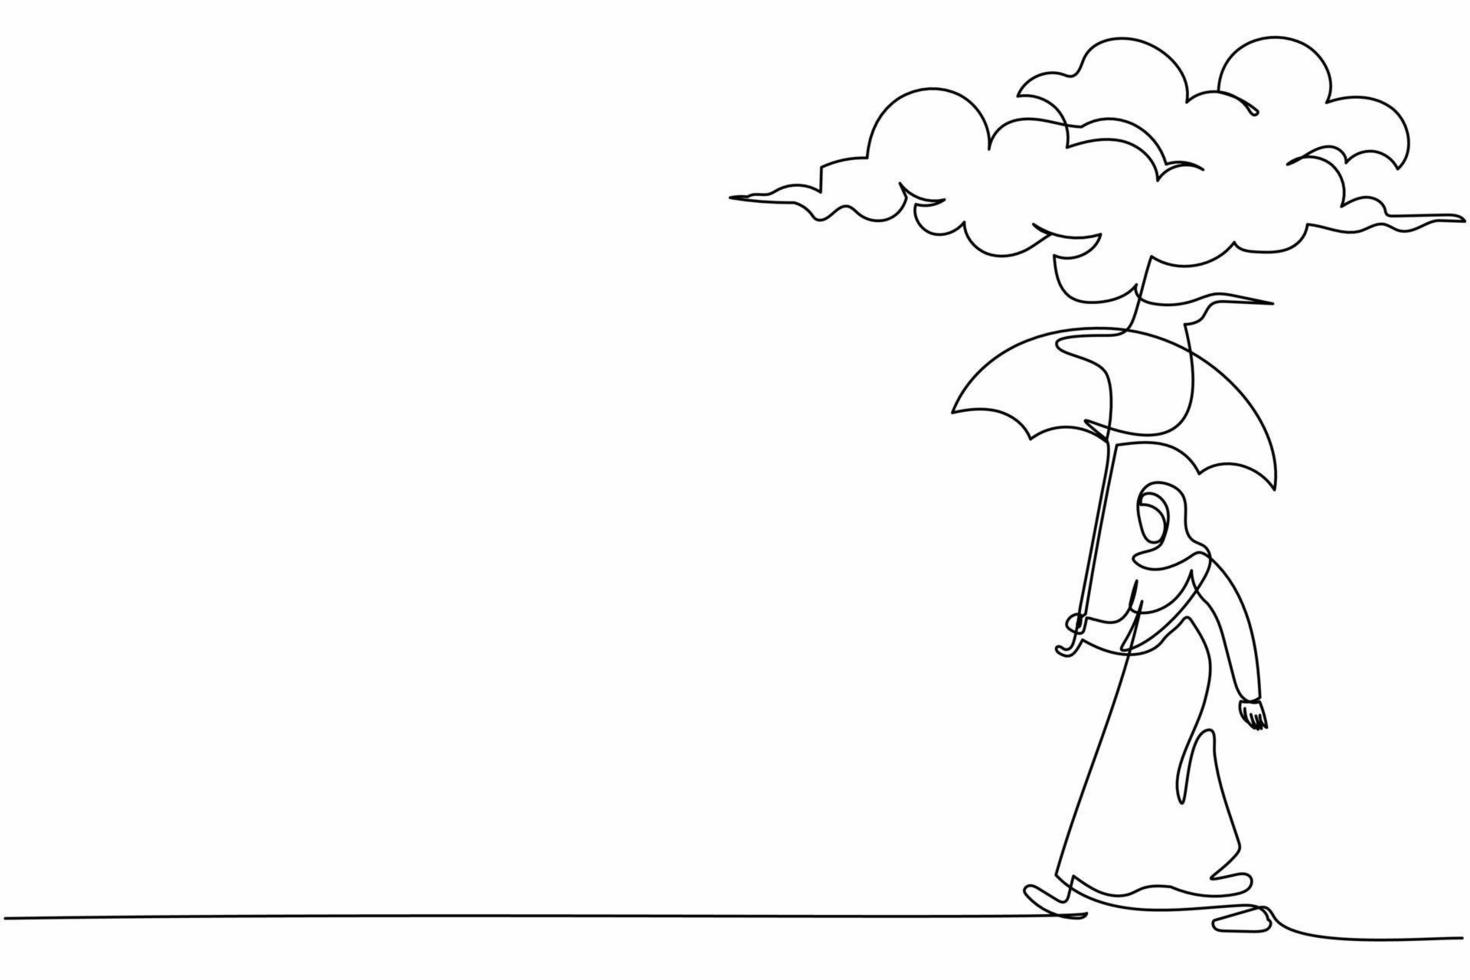 durchgehende einstrichzeichnung traurigkeit arabische geschäftsfrau, die mit regenschirmständer unter regenwolke geht. Depression, Weinen, Passant bei Regenwetter. einzeiliges zeichnen design vektorgrafik illustration vektor